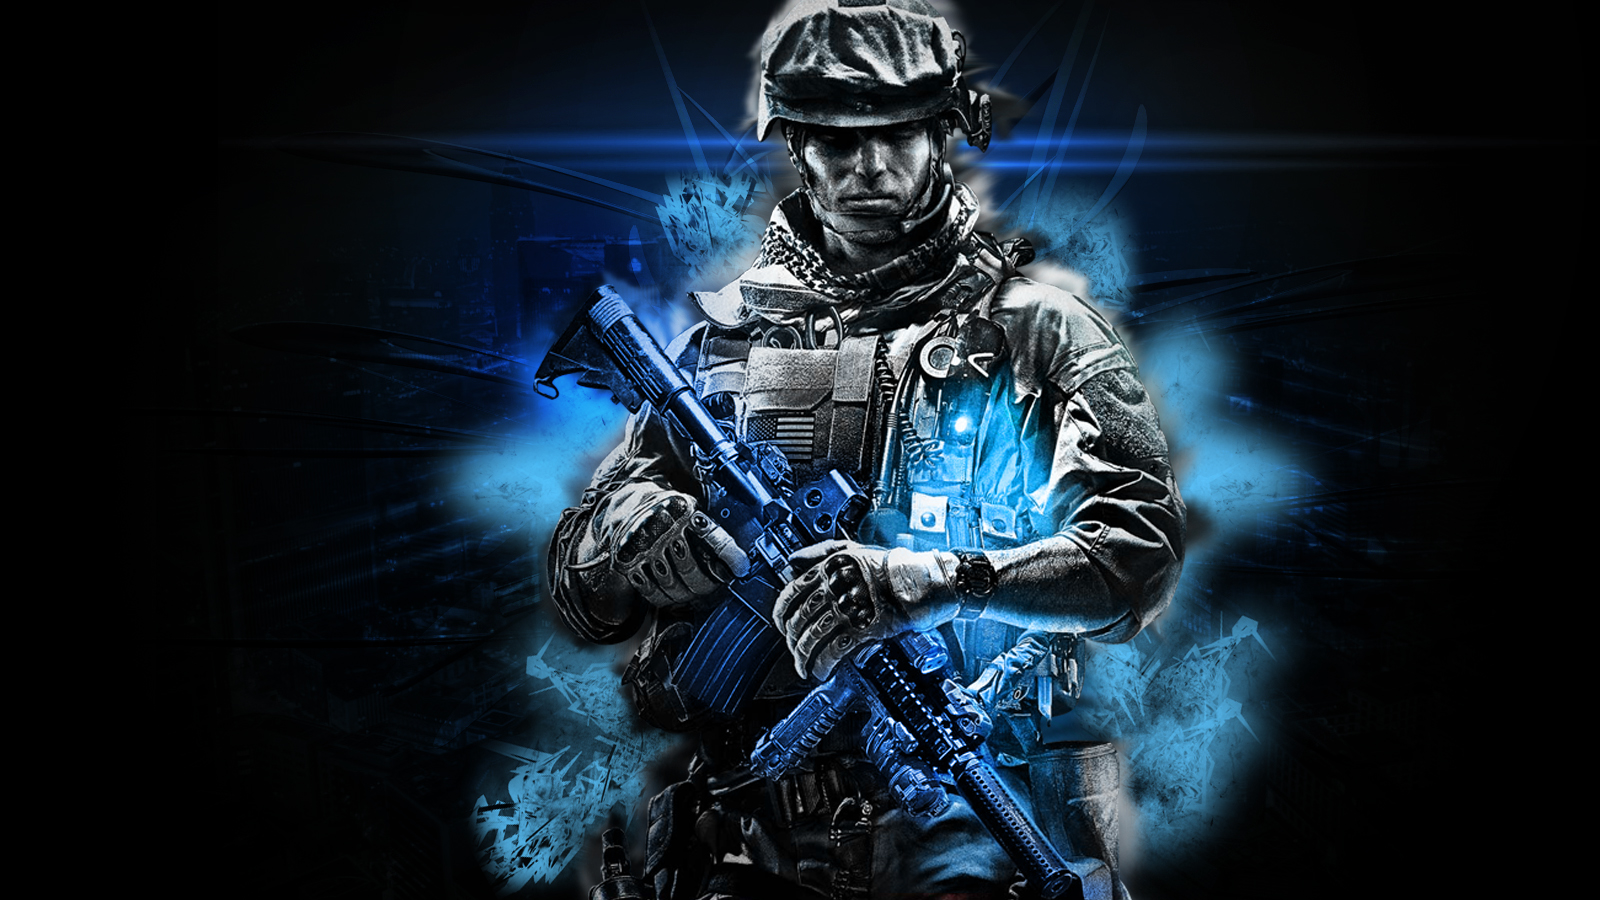 Battlefield HD Cool Background Wallpaper Games